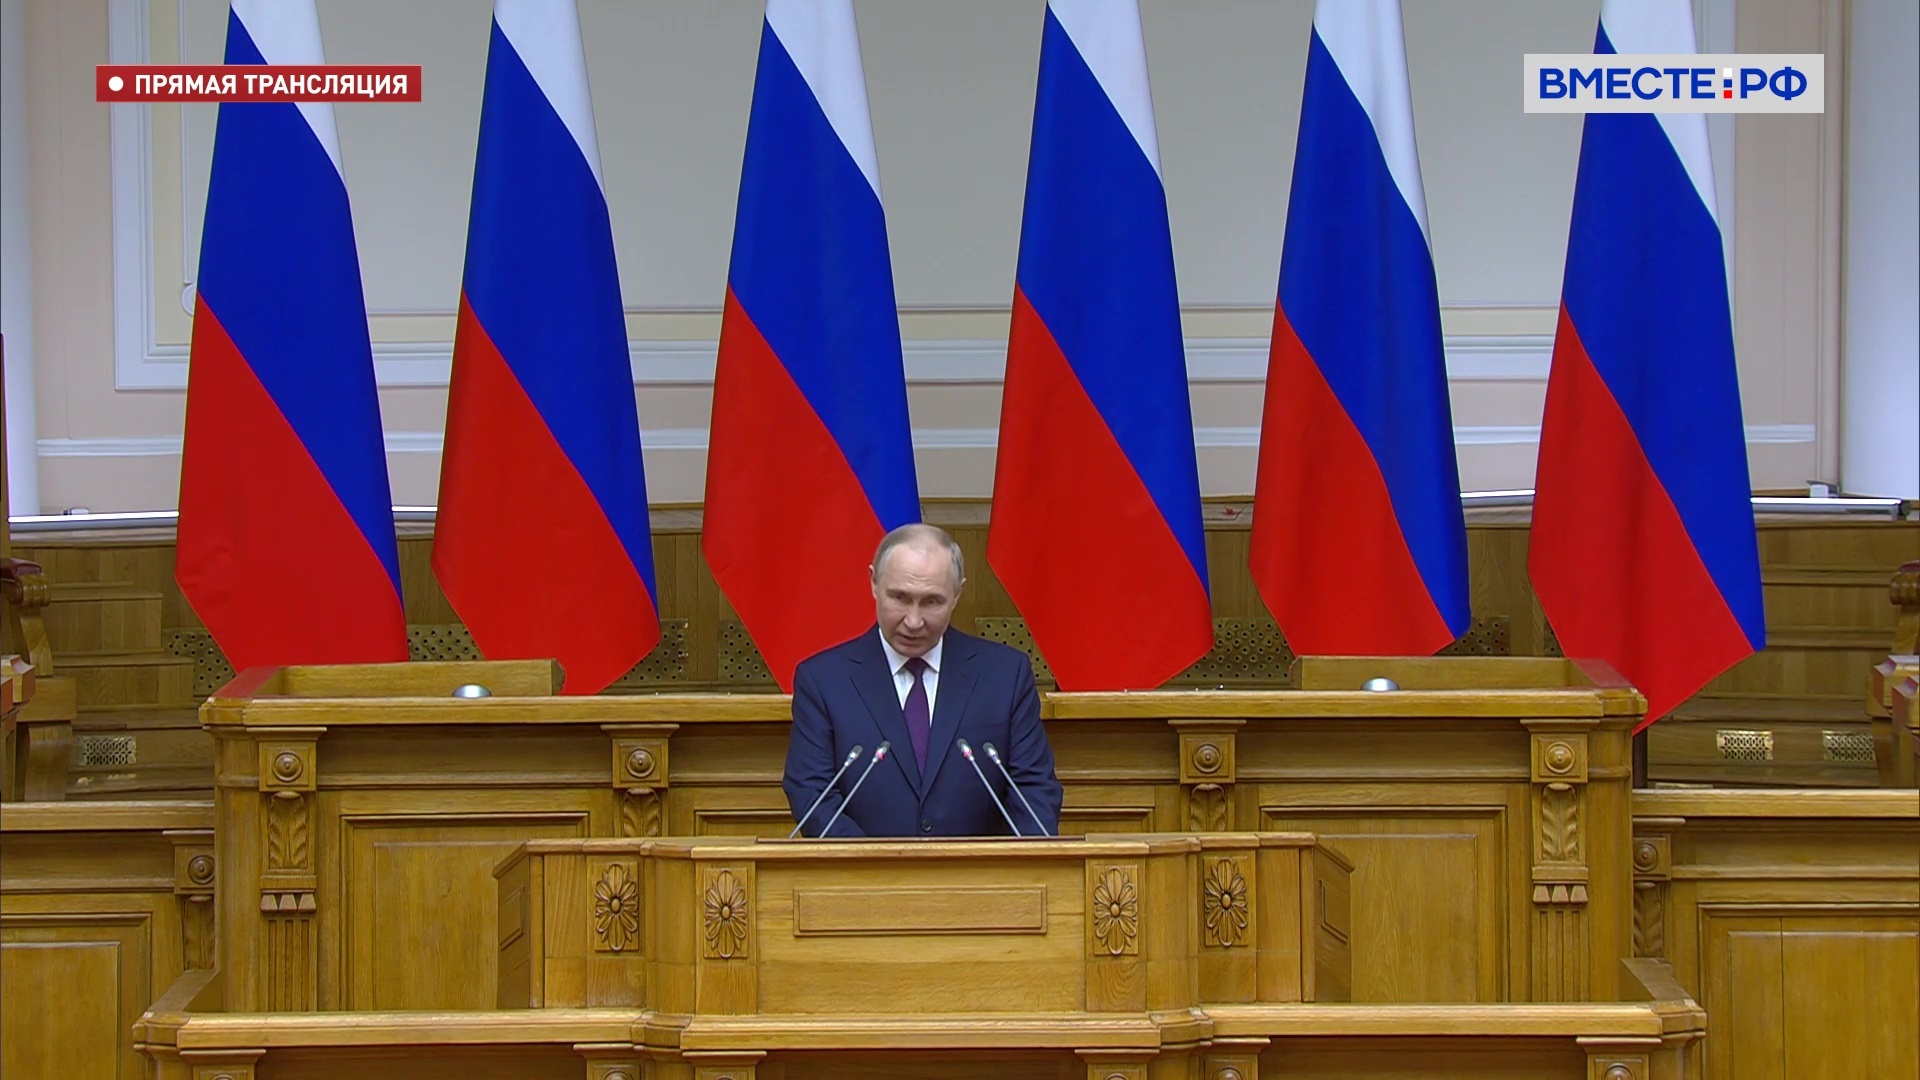 Путин призвал законодателей активно использовать инструменты парламентского контроля